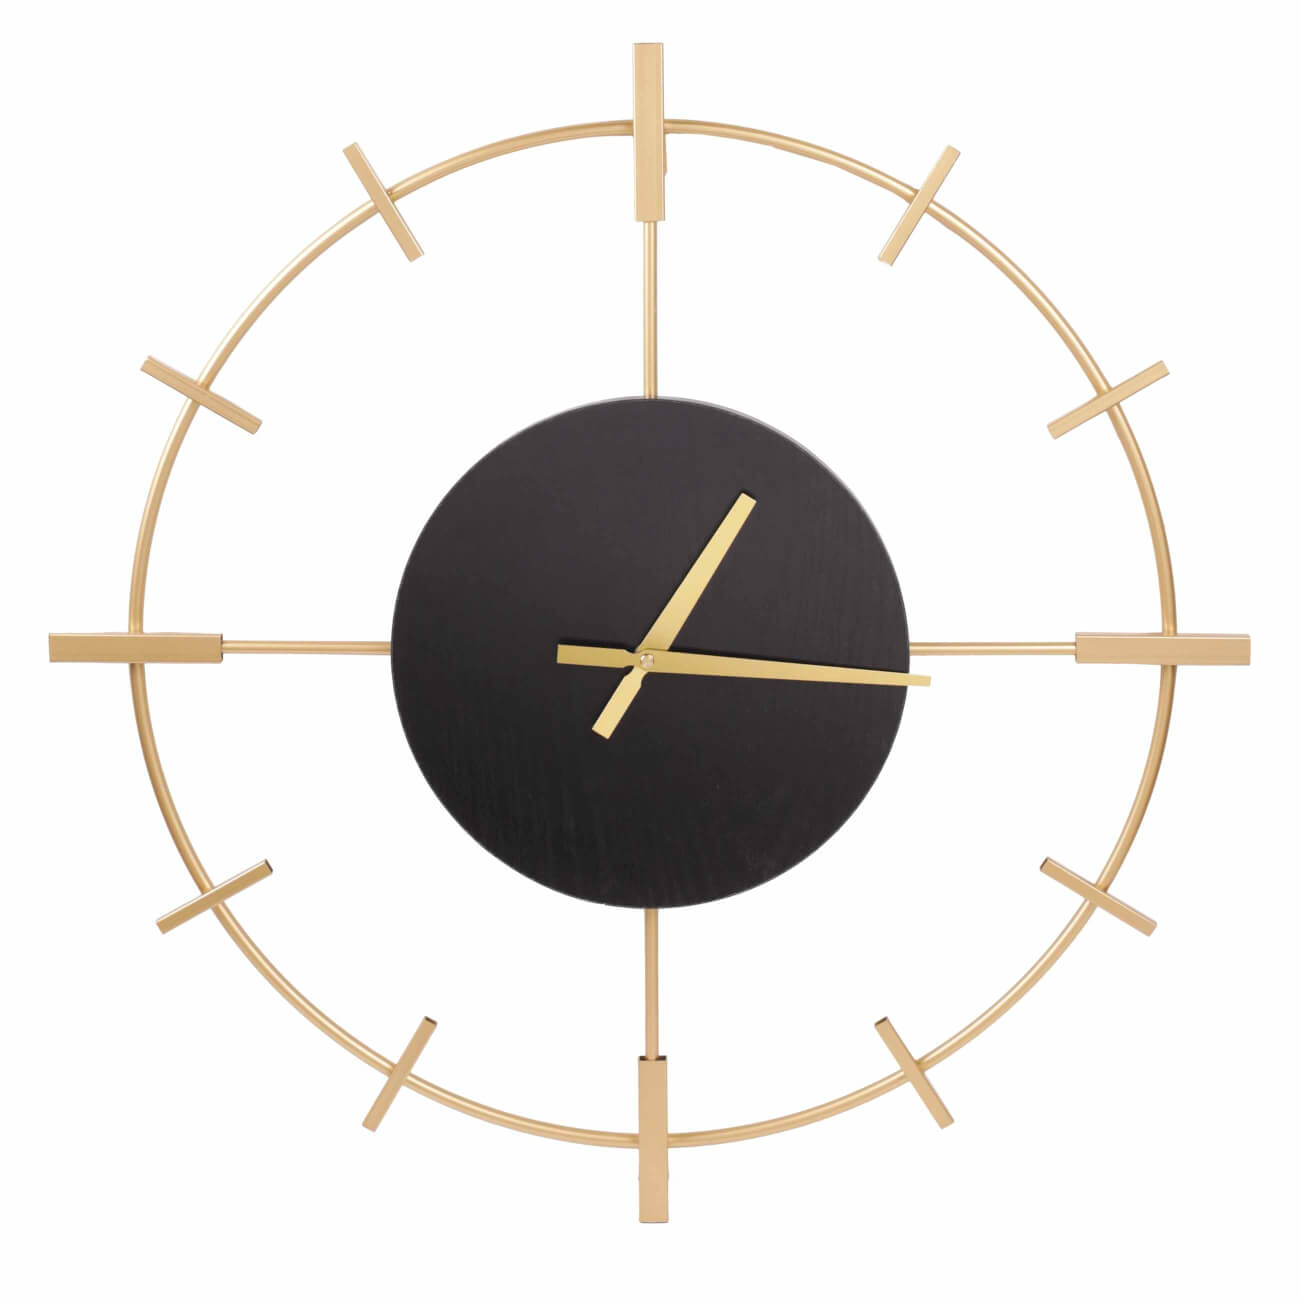 Часы настенные, 61 см, металл/дерево, круглые, черно-золотистые, Штурвал, Discovery часы электронные настенные